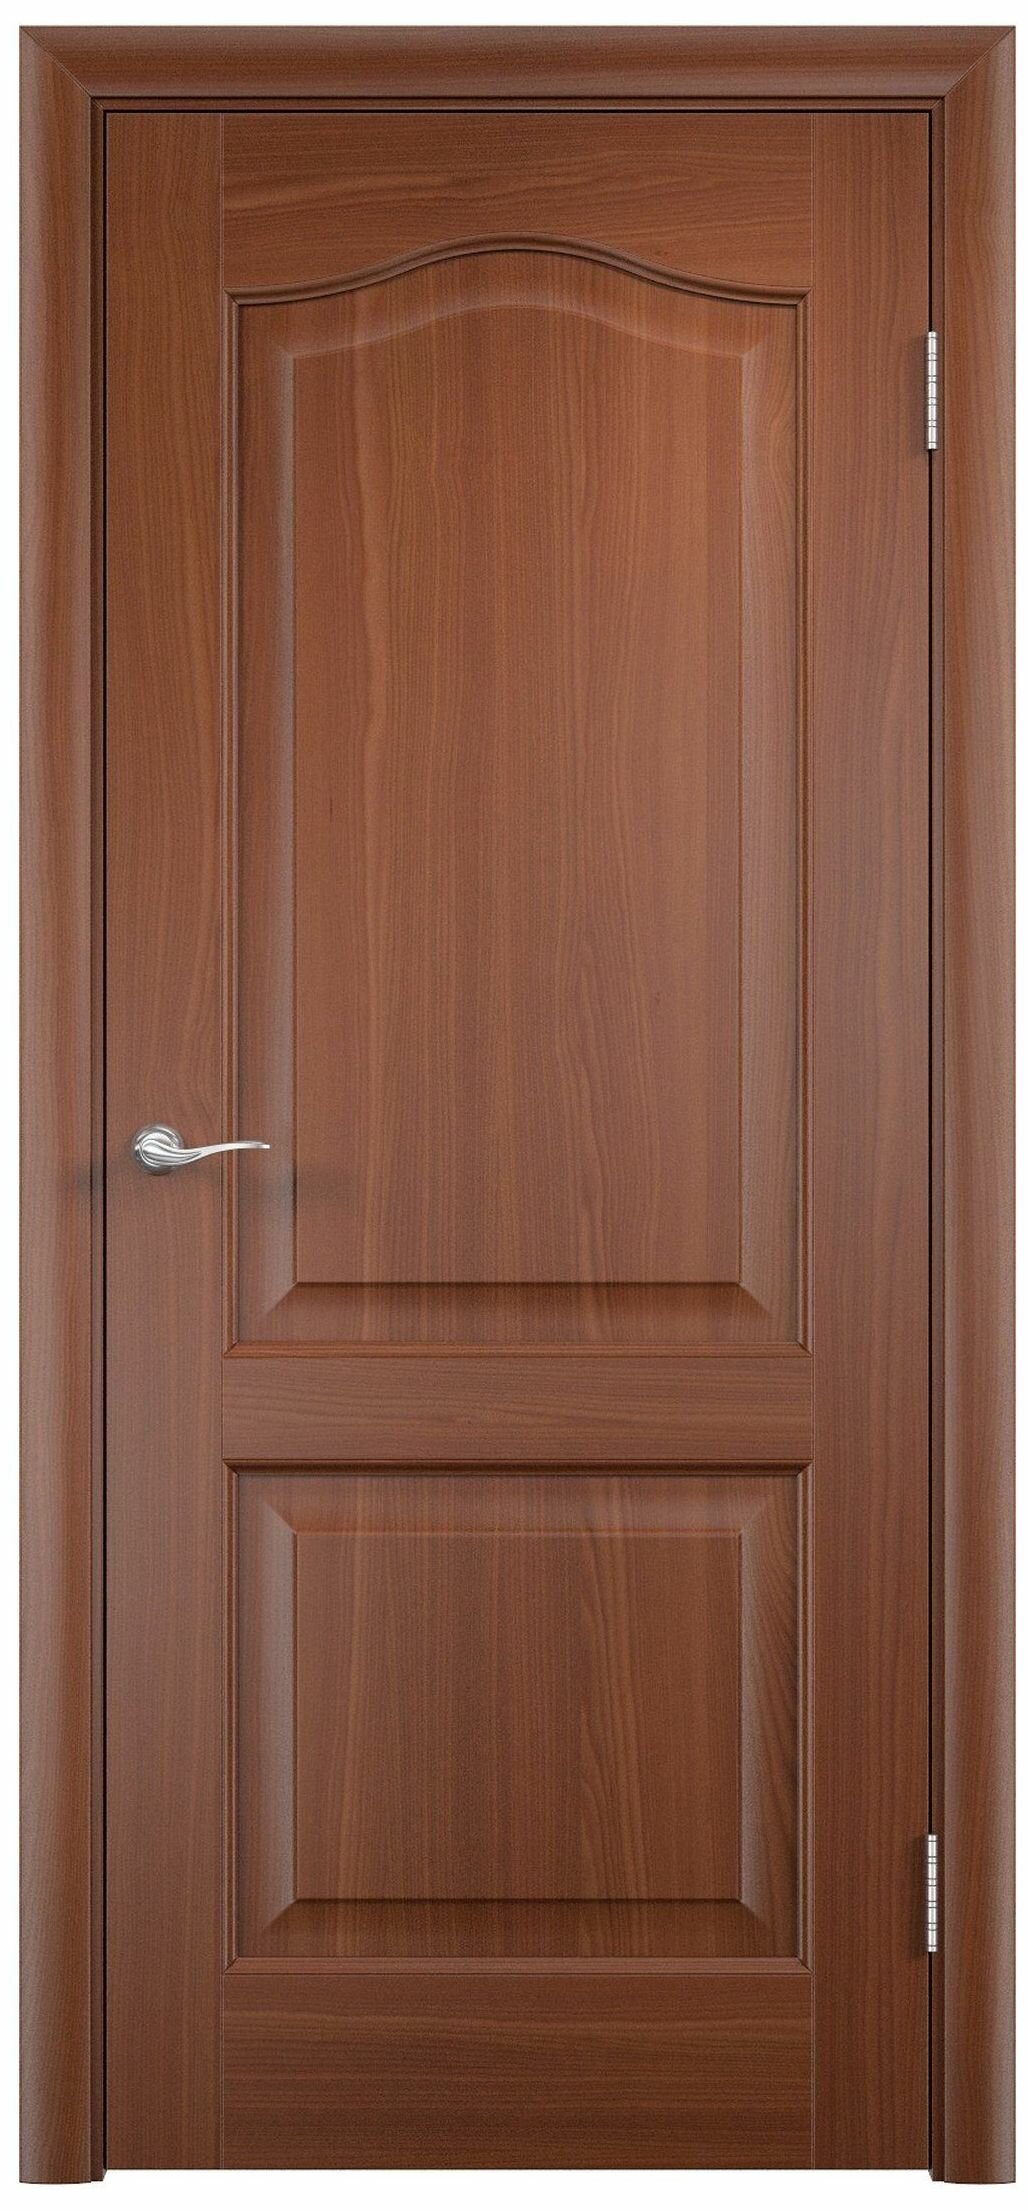 Межкомнатная дверь Палитра глухая Итальянский орех 70х200 cм